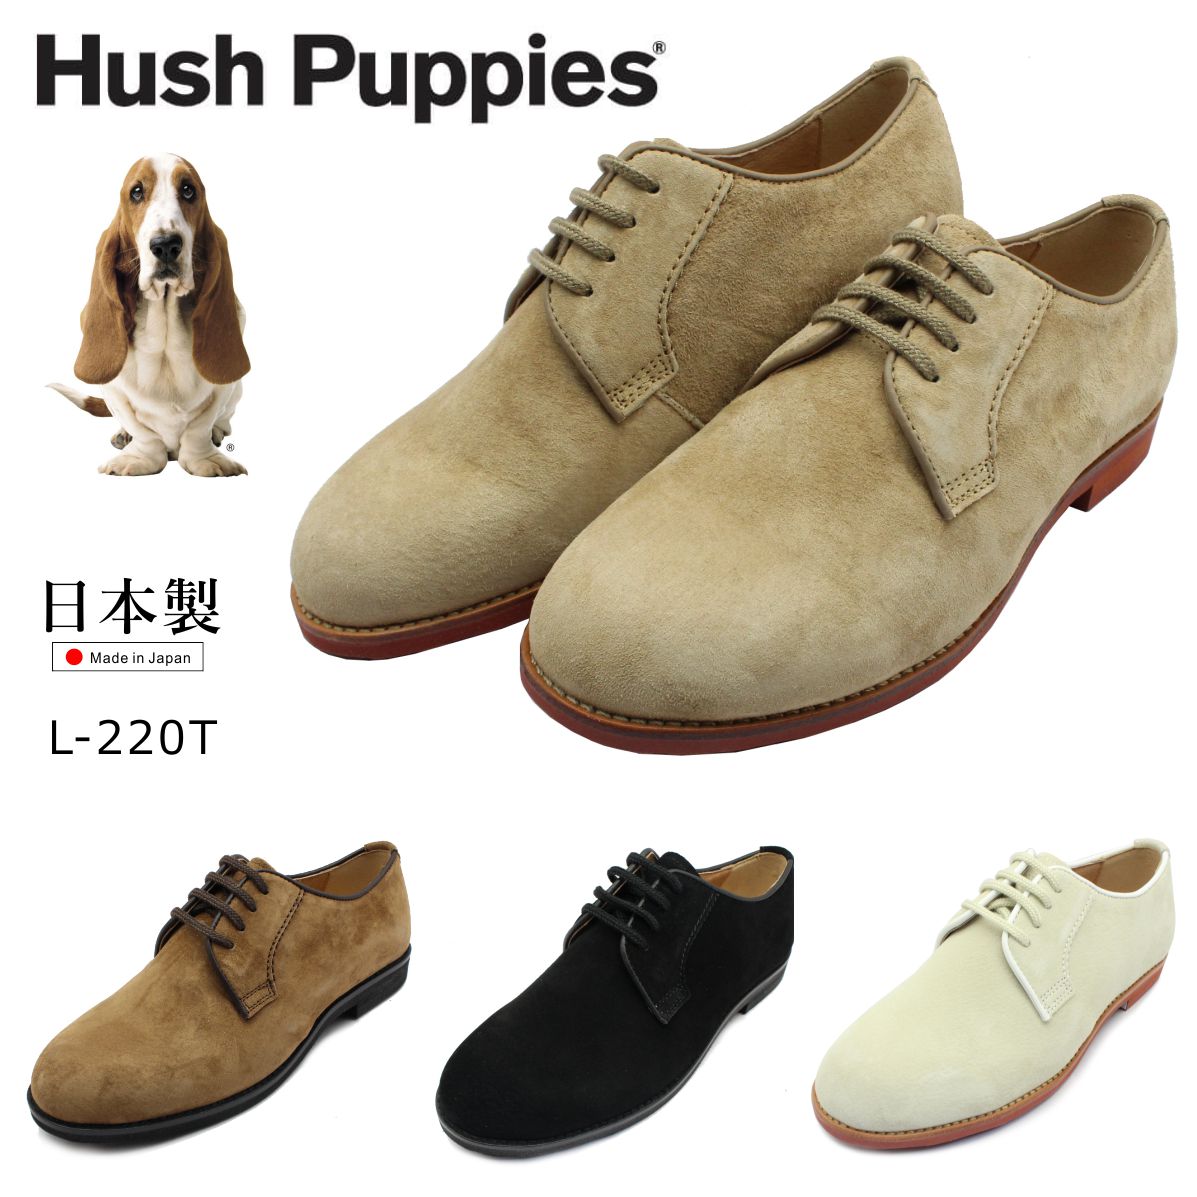 ハッシュパピー レディース L-220T カジュアルシューズ 撥水レザー スエード 日本製 オックスフォード 220T 婦人靴 Hush Puppies  :hush220t:ミッキー靴店 通販 